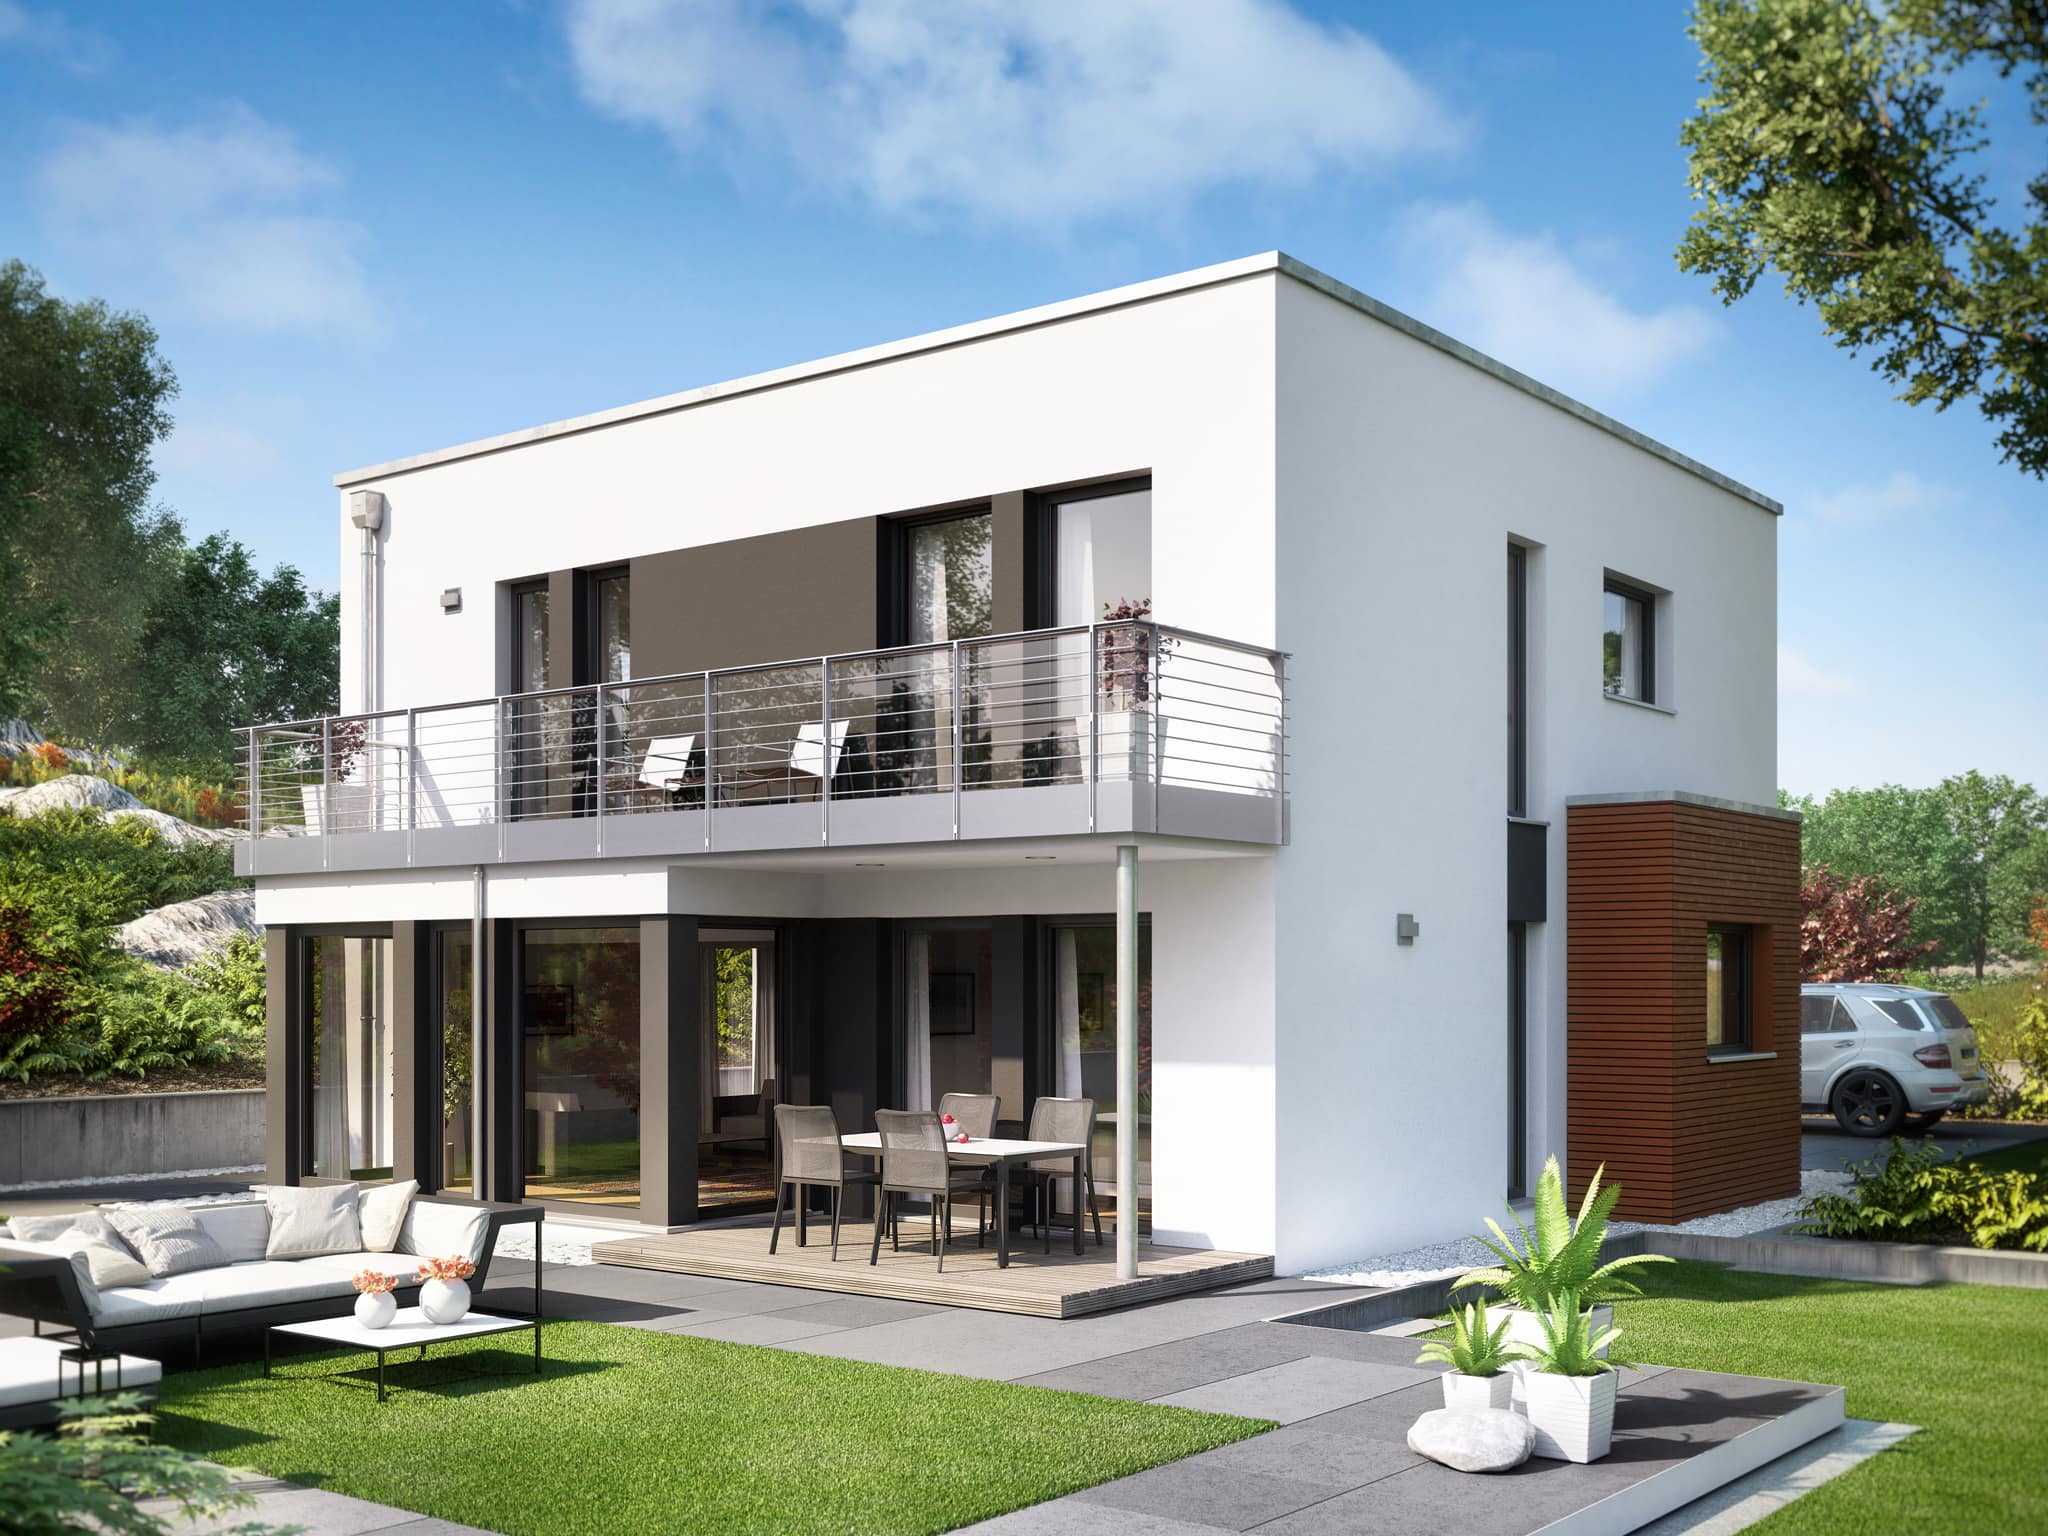 Bauhaus Stadtvilla modern mit Flachdach, Erker & Balkon, 5 Zimmer, 150 qm - Fertighaus Living Haus SUNSHINE 151 V8 - HausbauDirekt.de